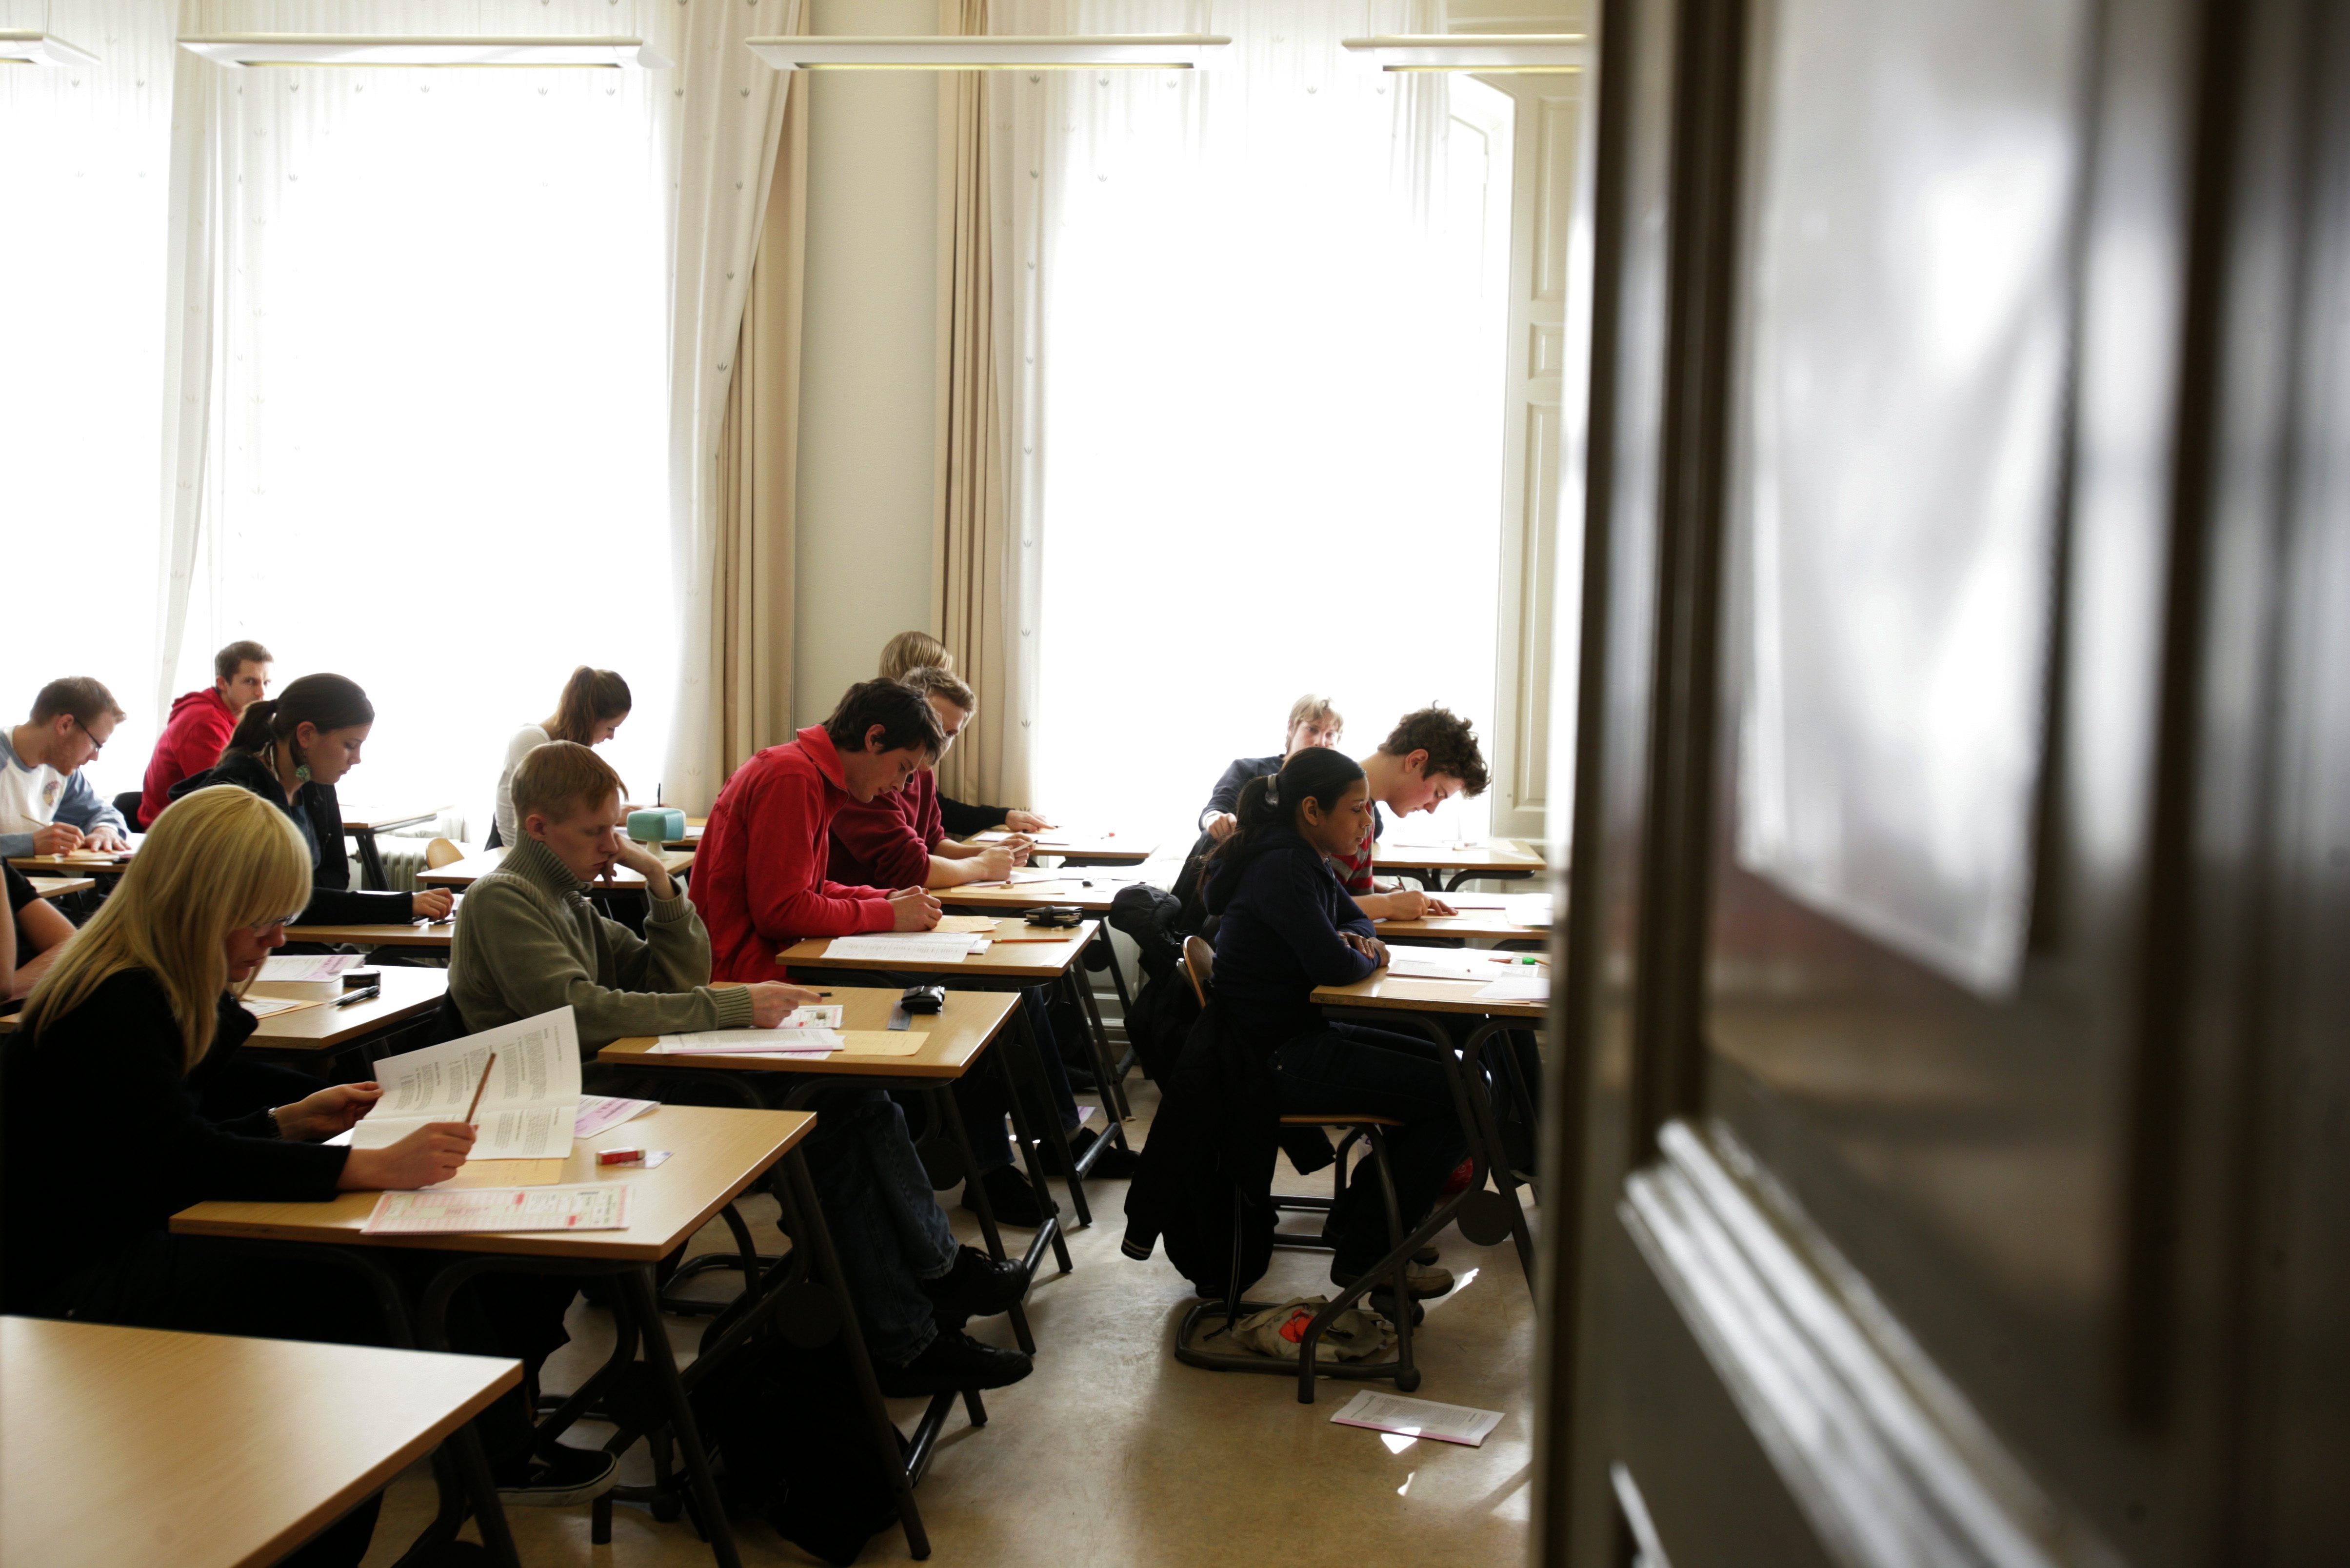 Svenska studenter är borta en femtedel av lektionerna.